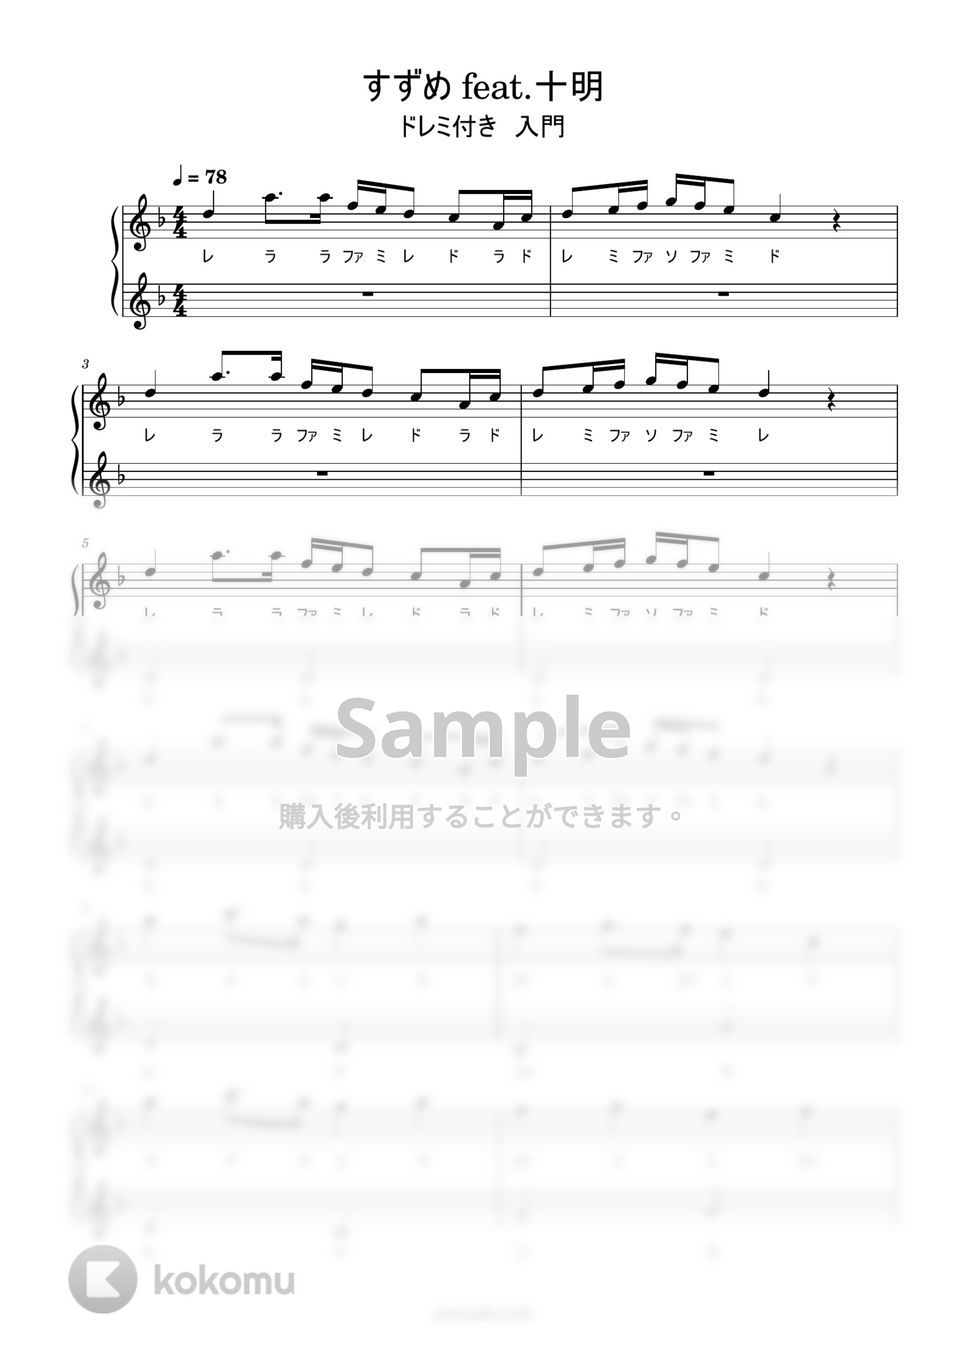 すずめの戸締まり - すずめ feat.十明 (ドレミ付き 簡単楽譜) by ピアノ塾